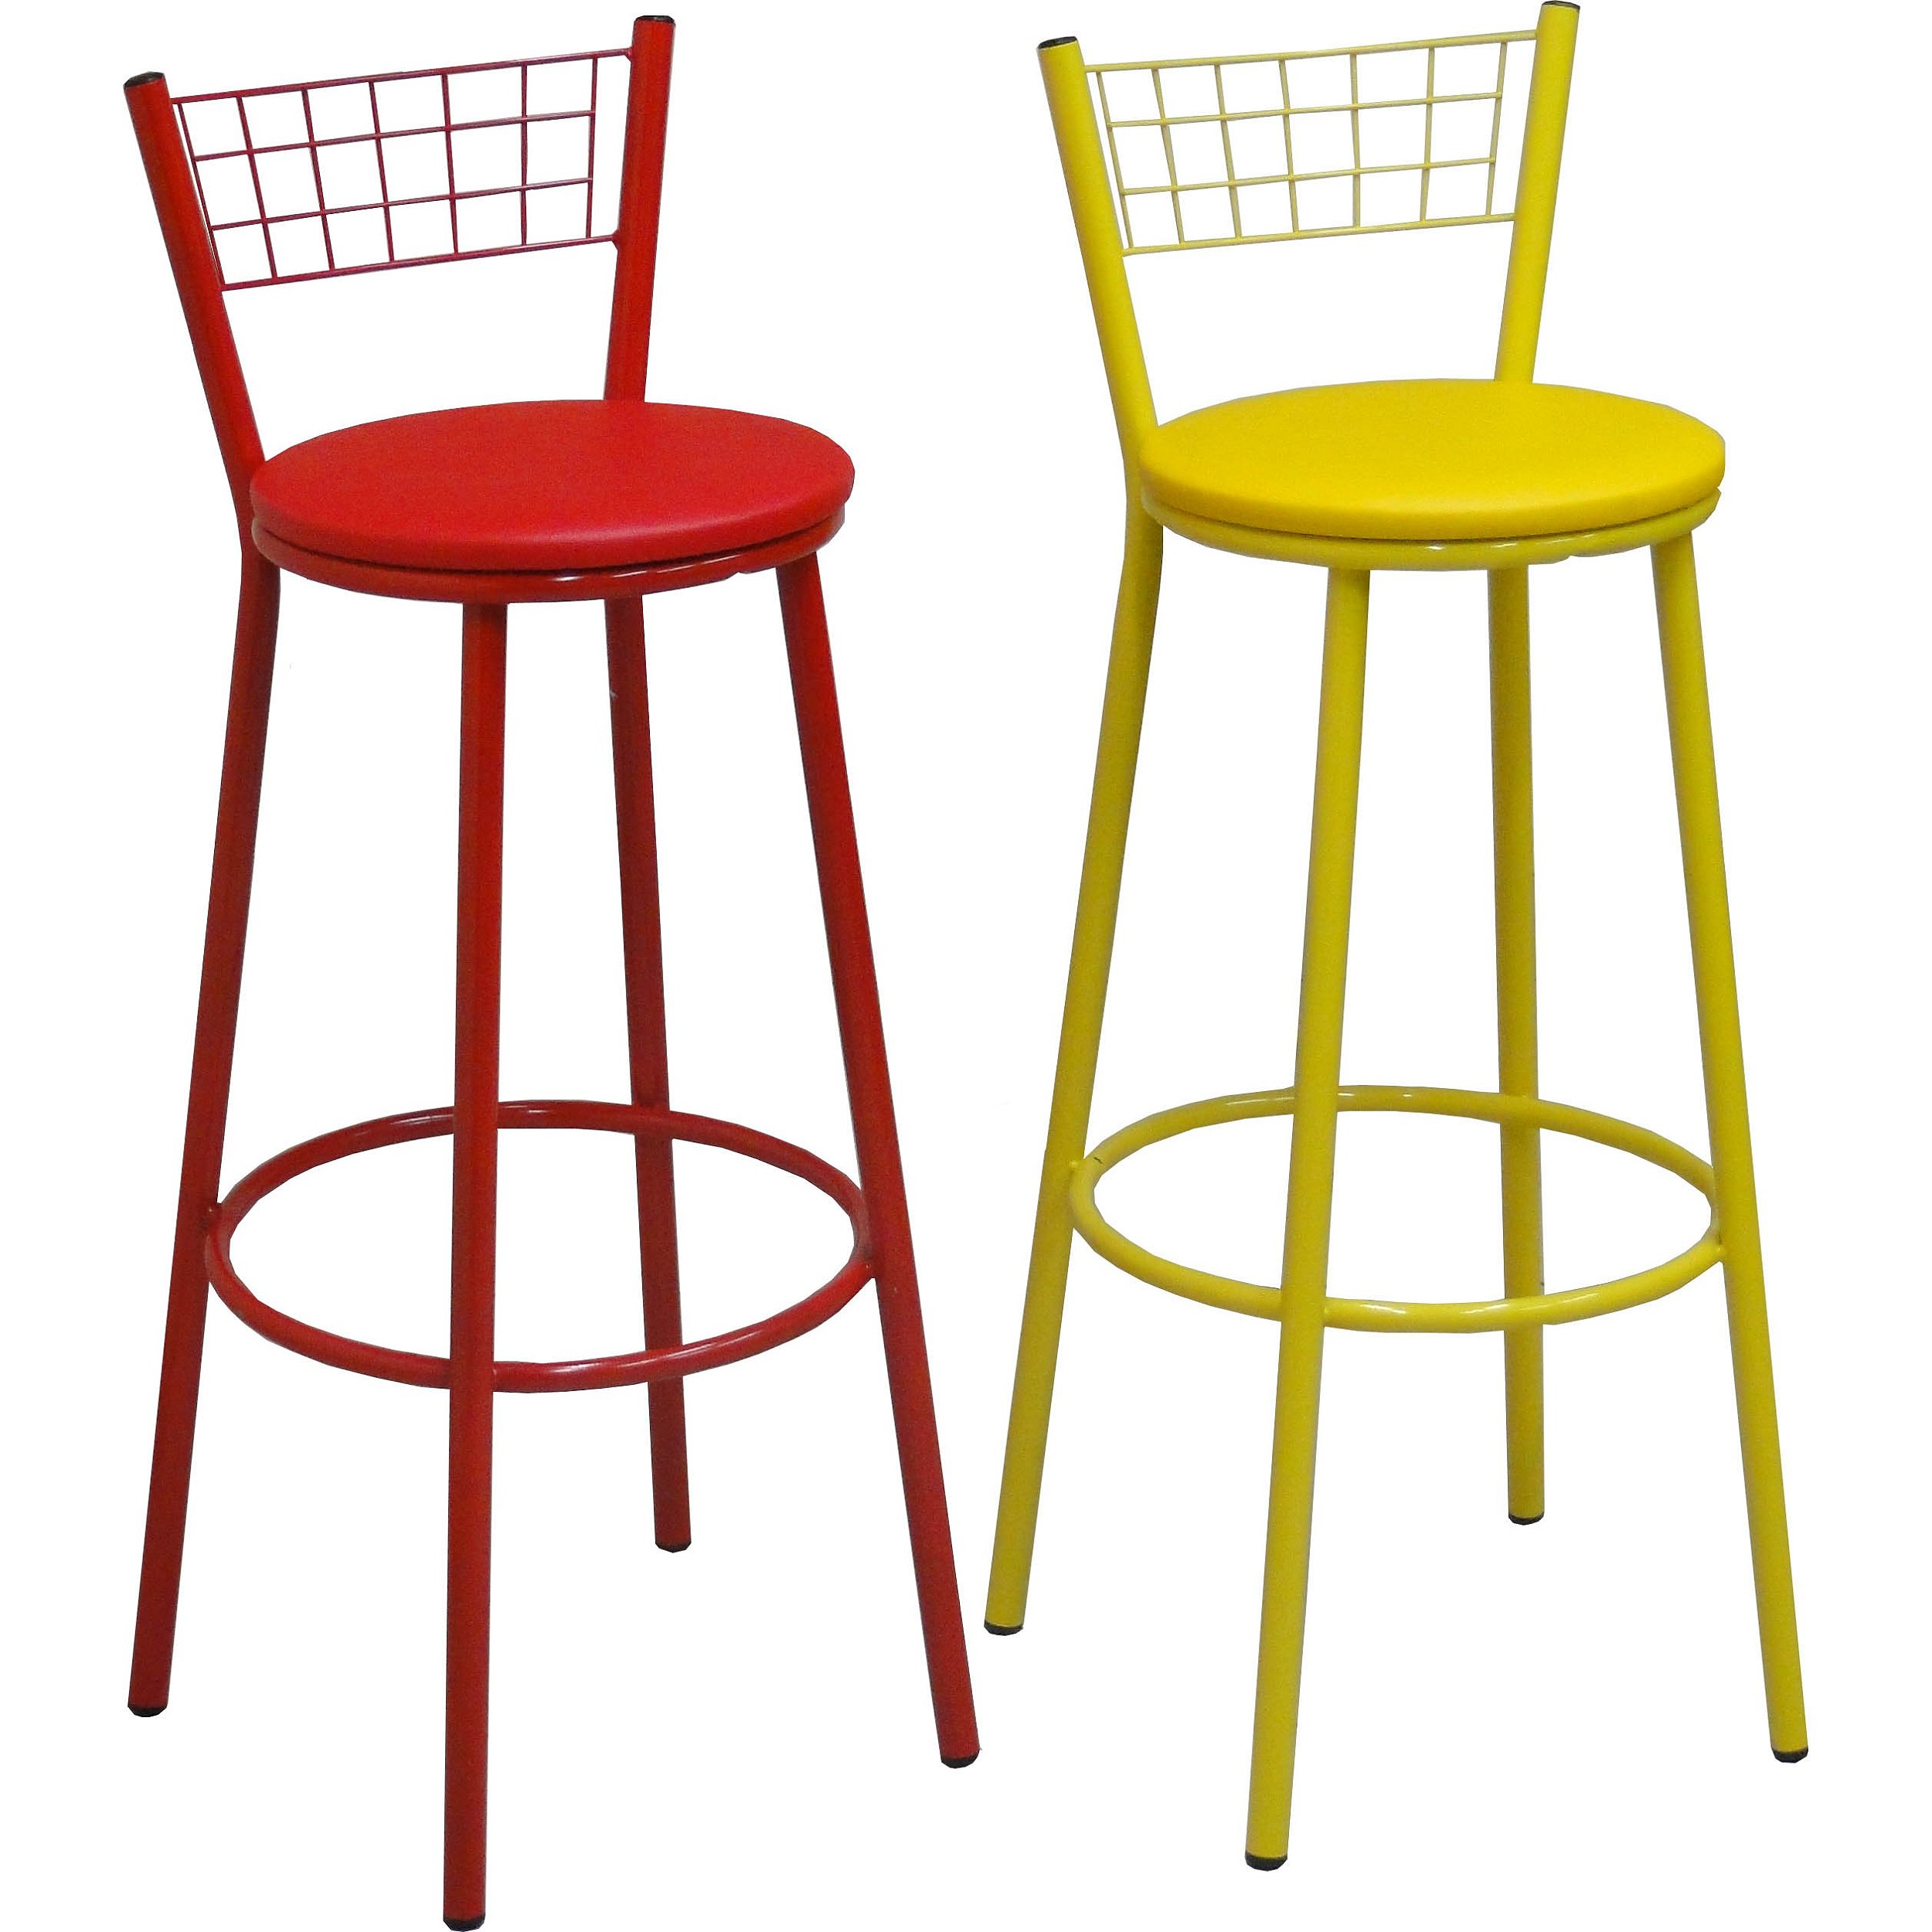 Banqueta alta para balcão coloridas - Dodo Deccor Mobiliário cadeiras e  banquetas - Caxias do Sul - RS